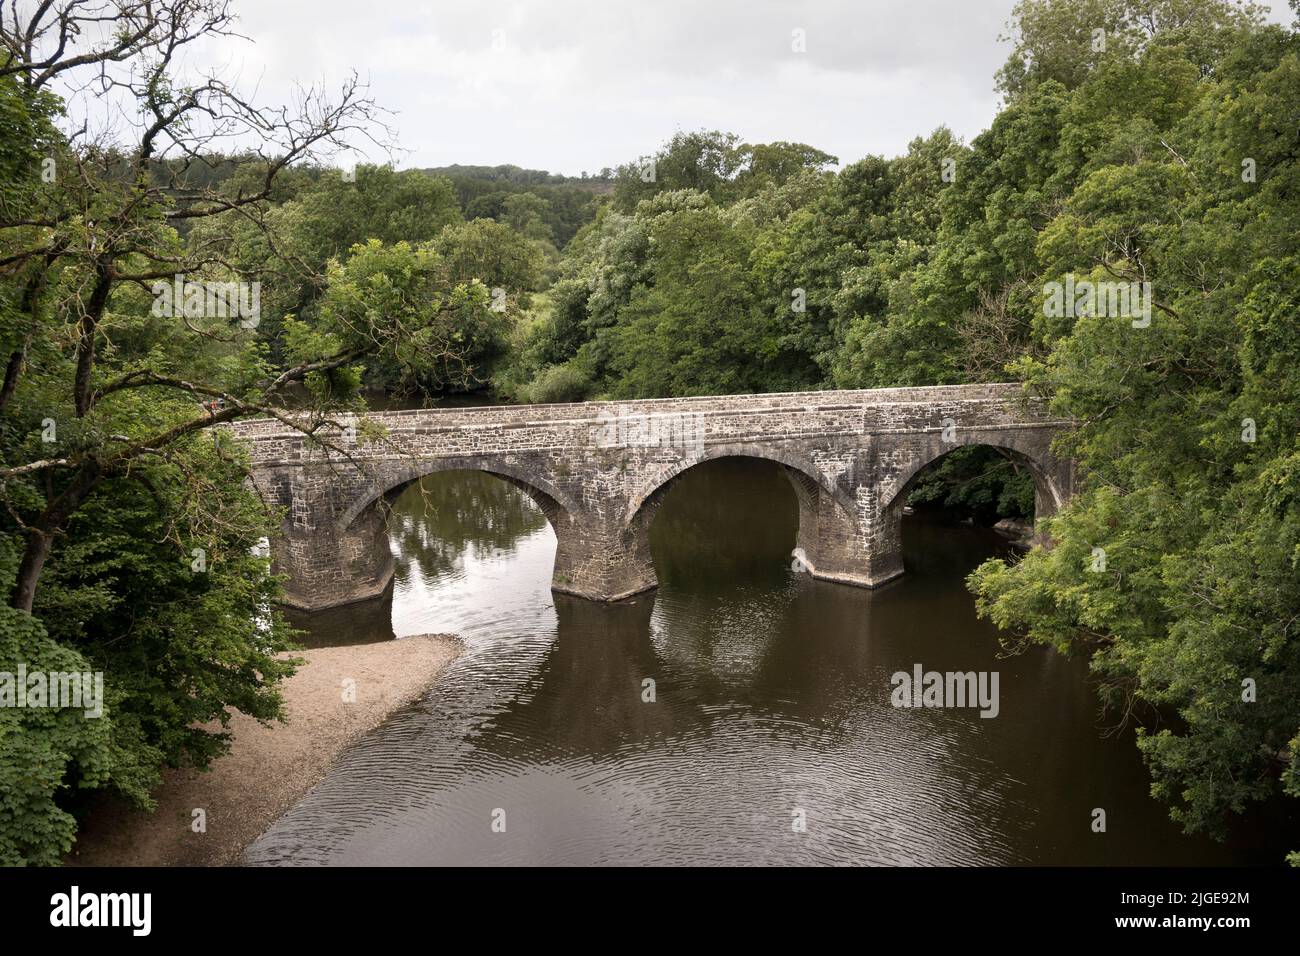 Le pont historique Rothern, Great Torrington, Devon. Une structure classée de catégorie II traversant la rivière Torridge. Les pièces datent du 15th siècle. Banque D'Images